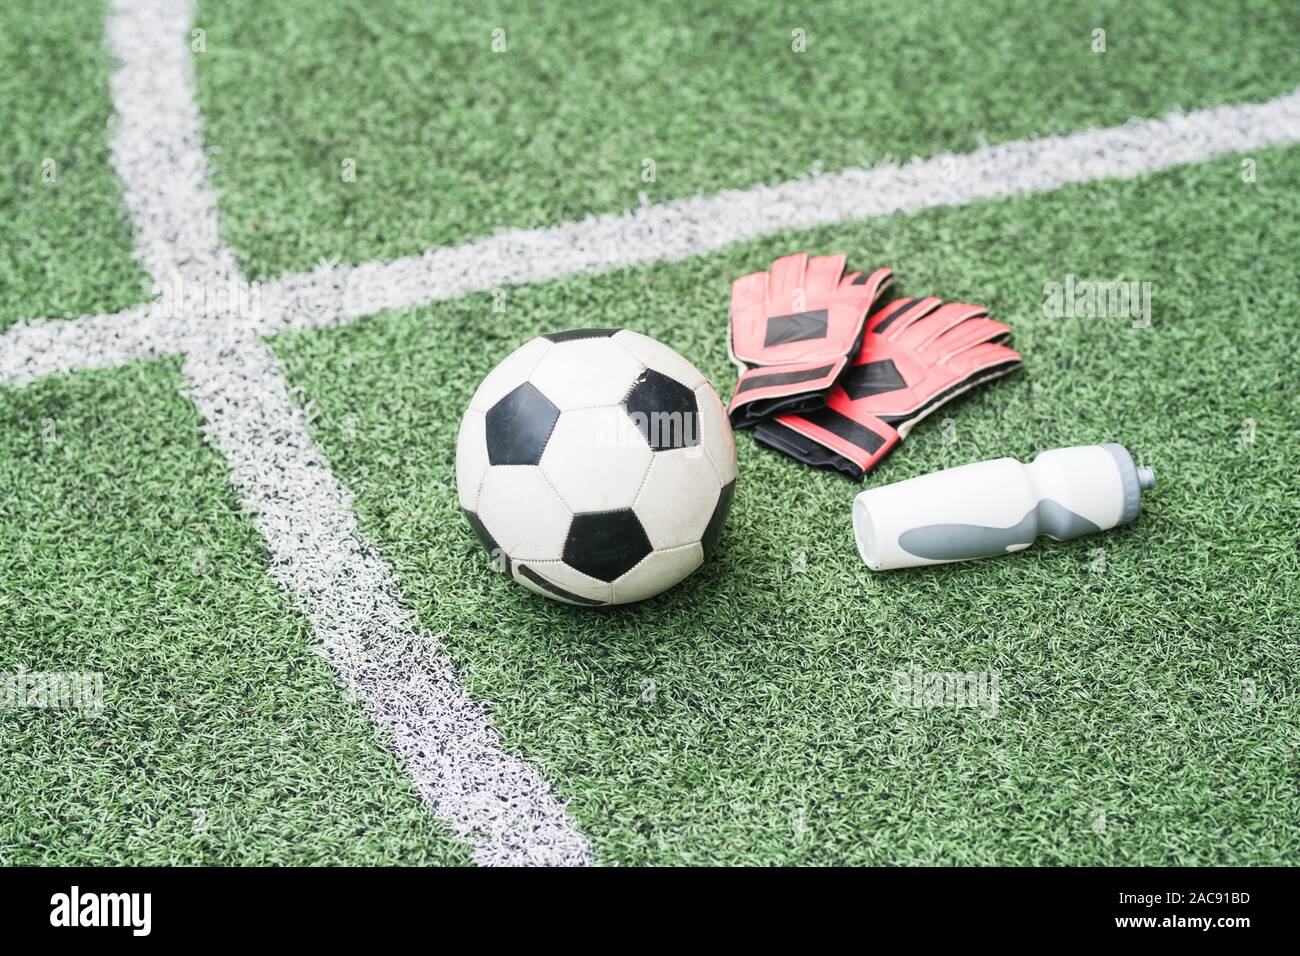 Gruppo di articoli sportivi - pallone da calcio, guanti in pelle e la bottiglia di plastica di acqua sul verde del campo di calcio Foto Stock